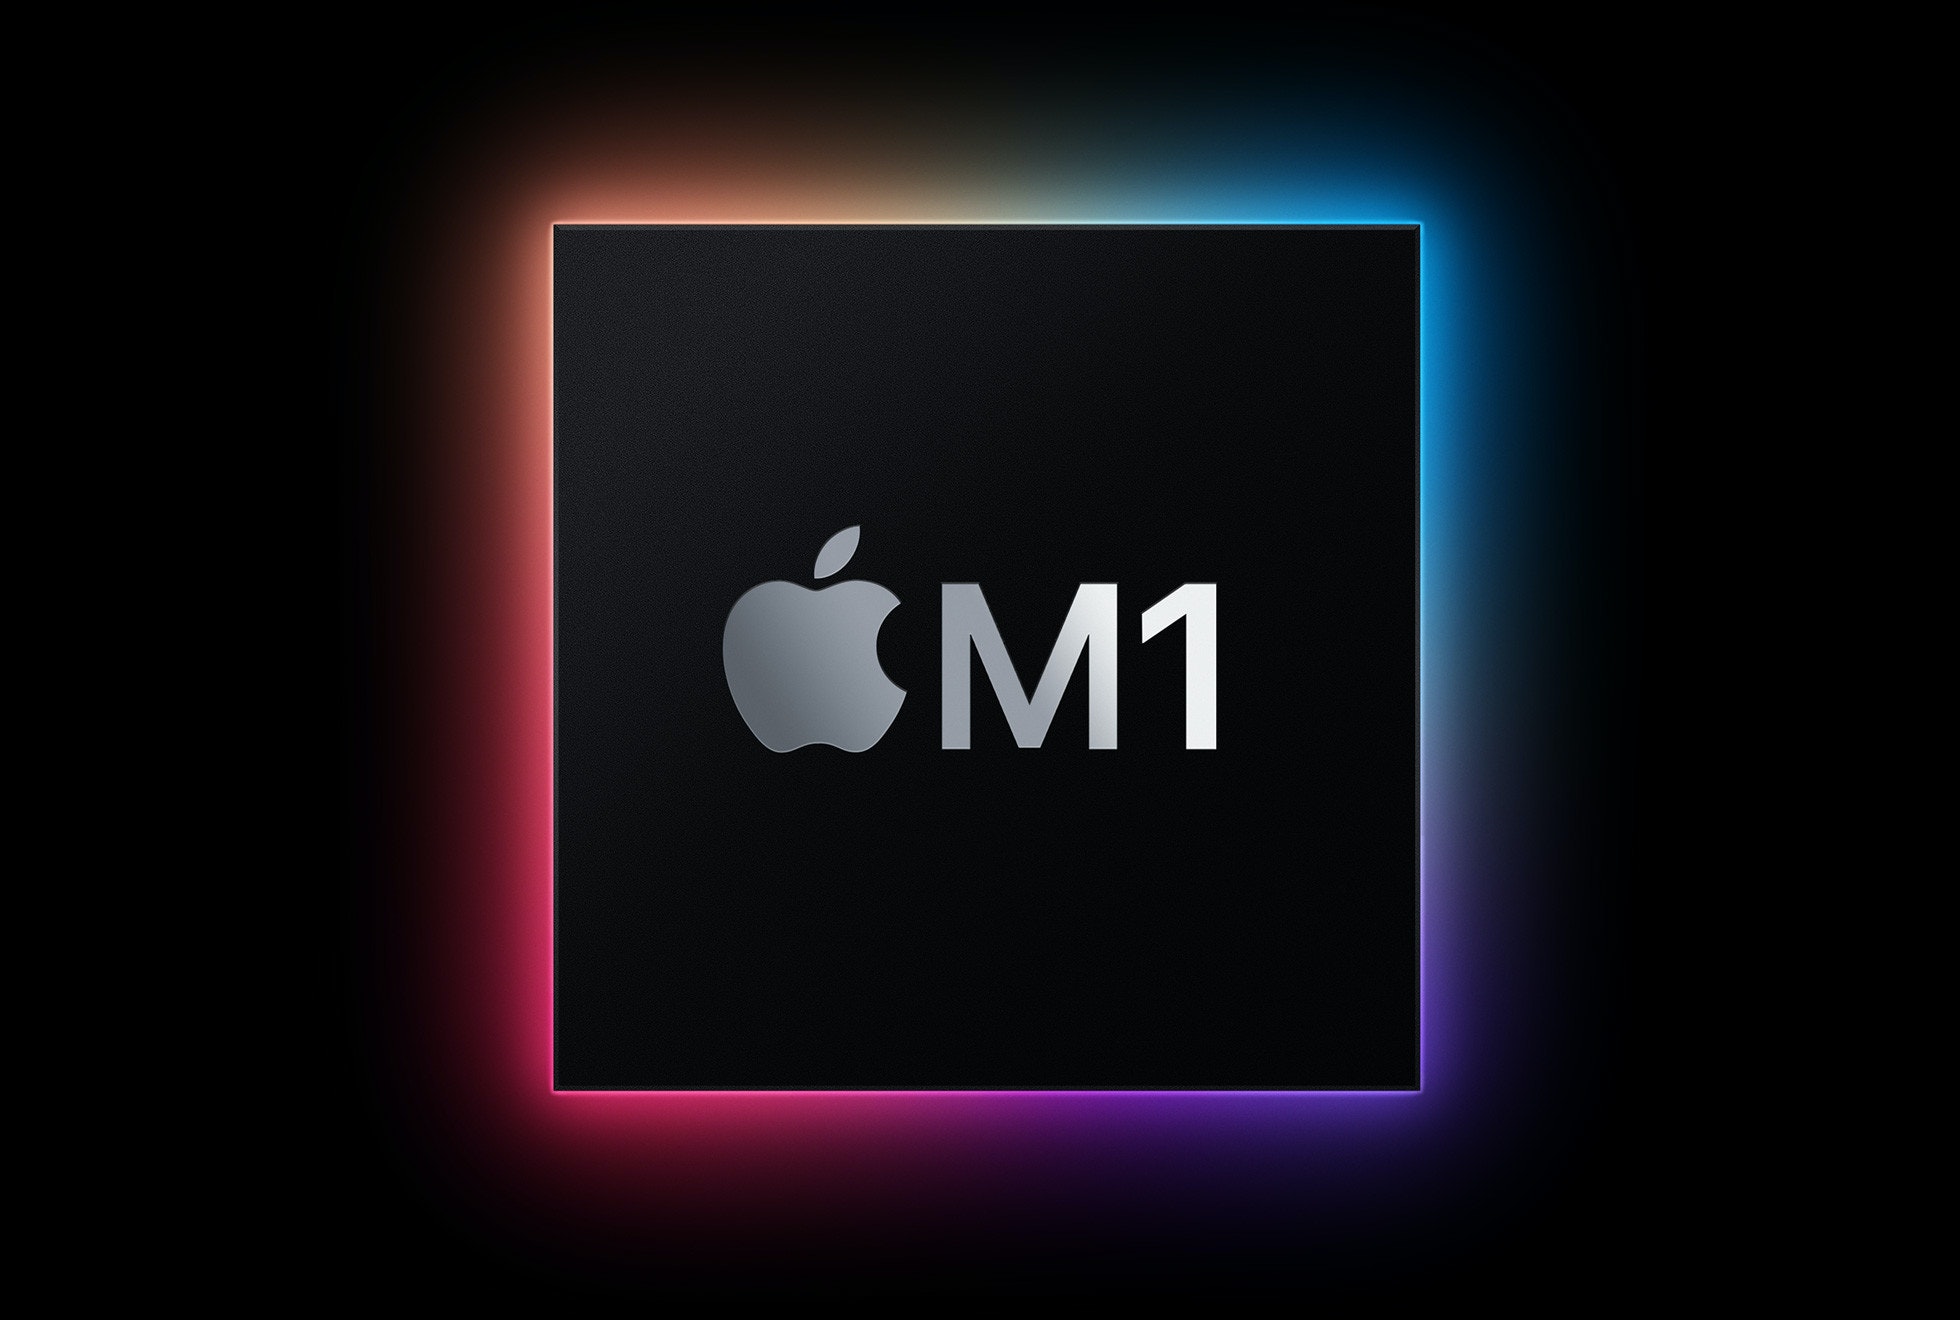 照片中提到了ÓM1，跟蘋果公司。有關，包含了蘋果、集成電路、蘋果、中央處理器、處理器